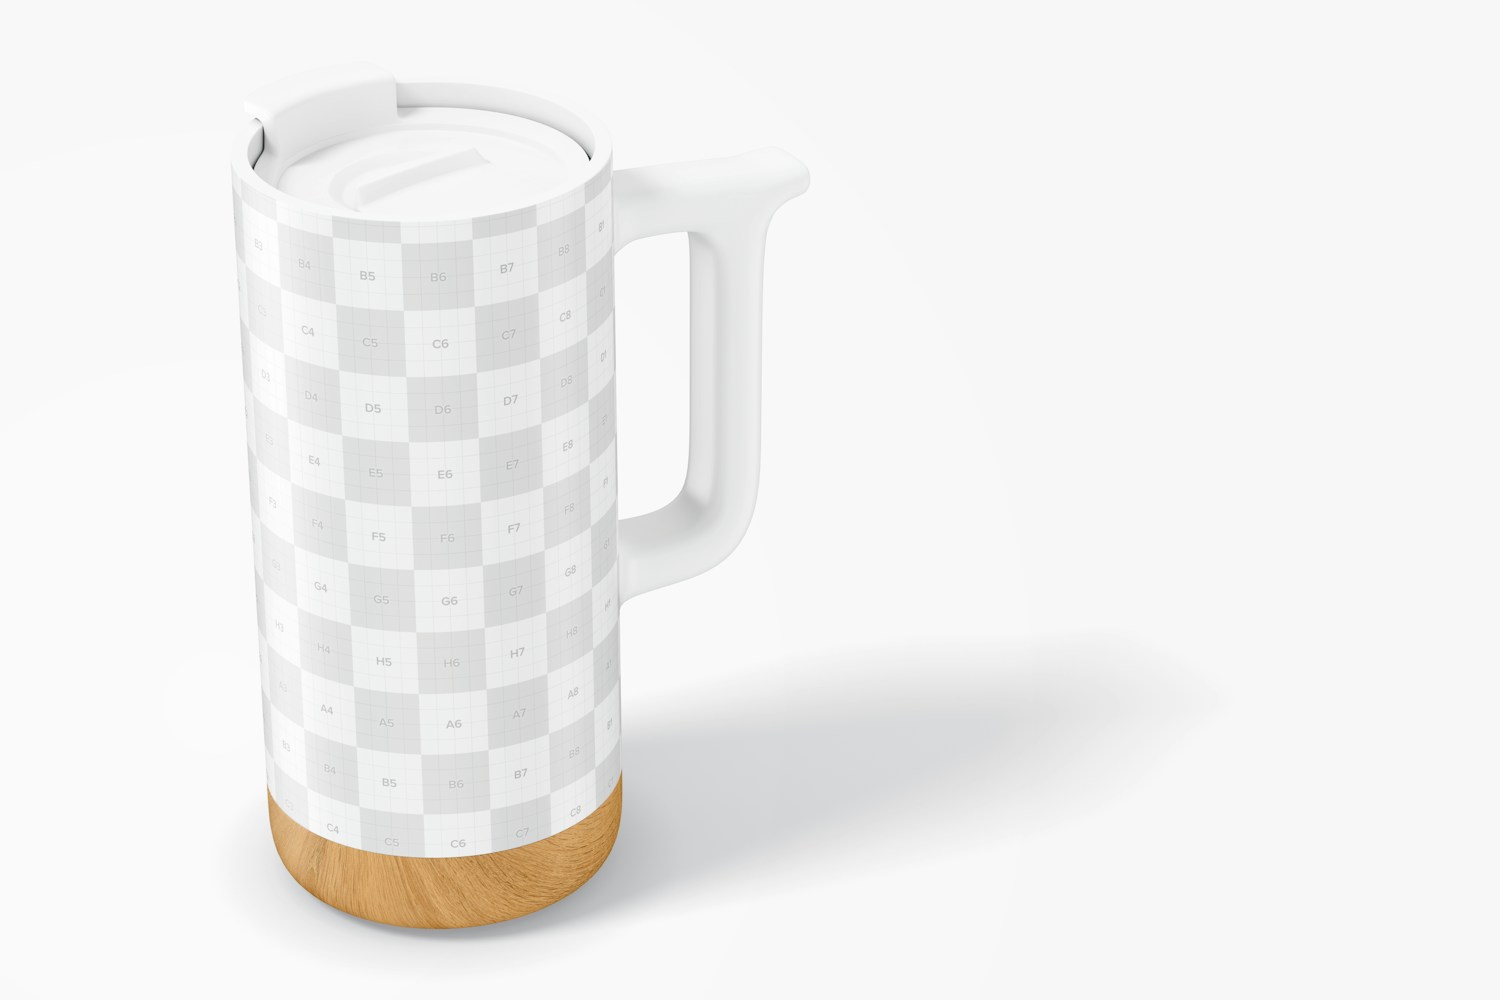 16 oz Ceramic Mug with Wood Base Mockup